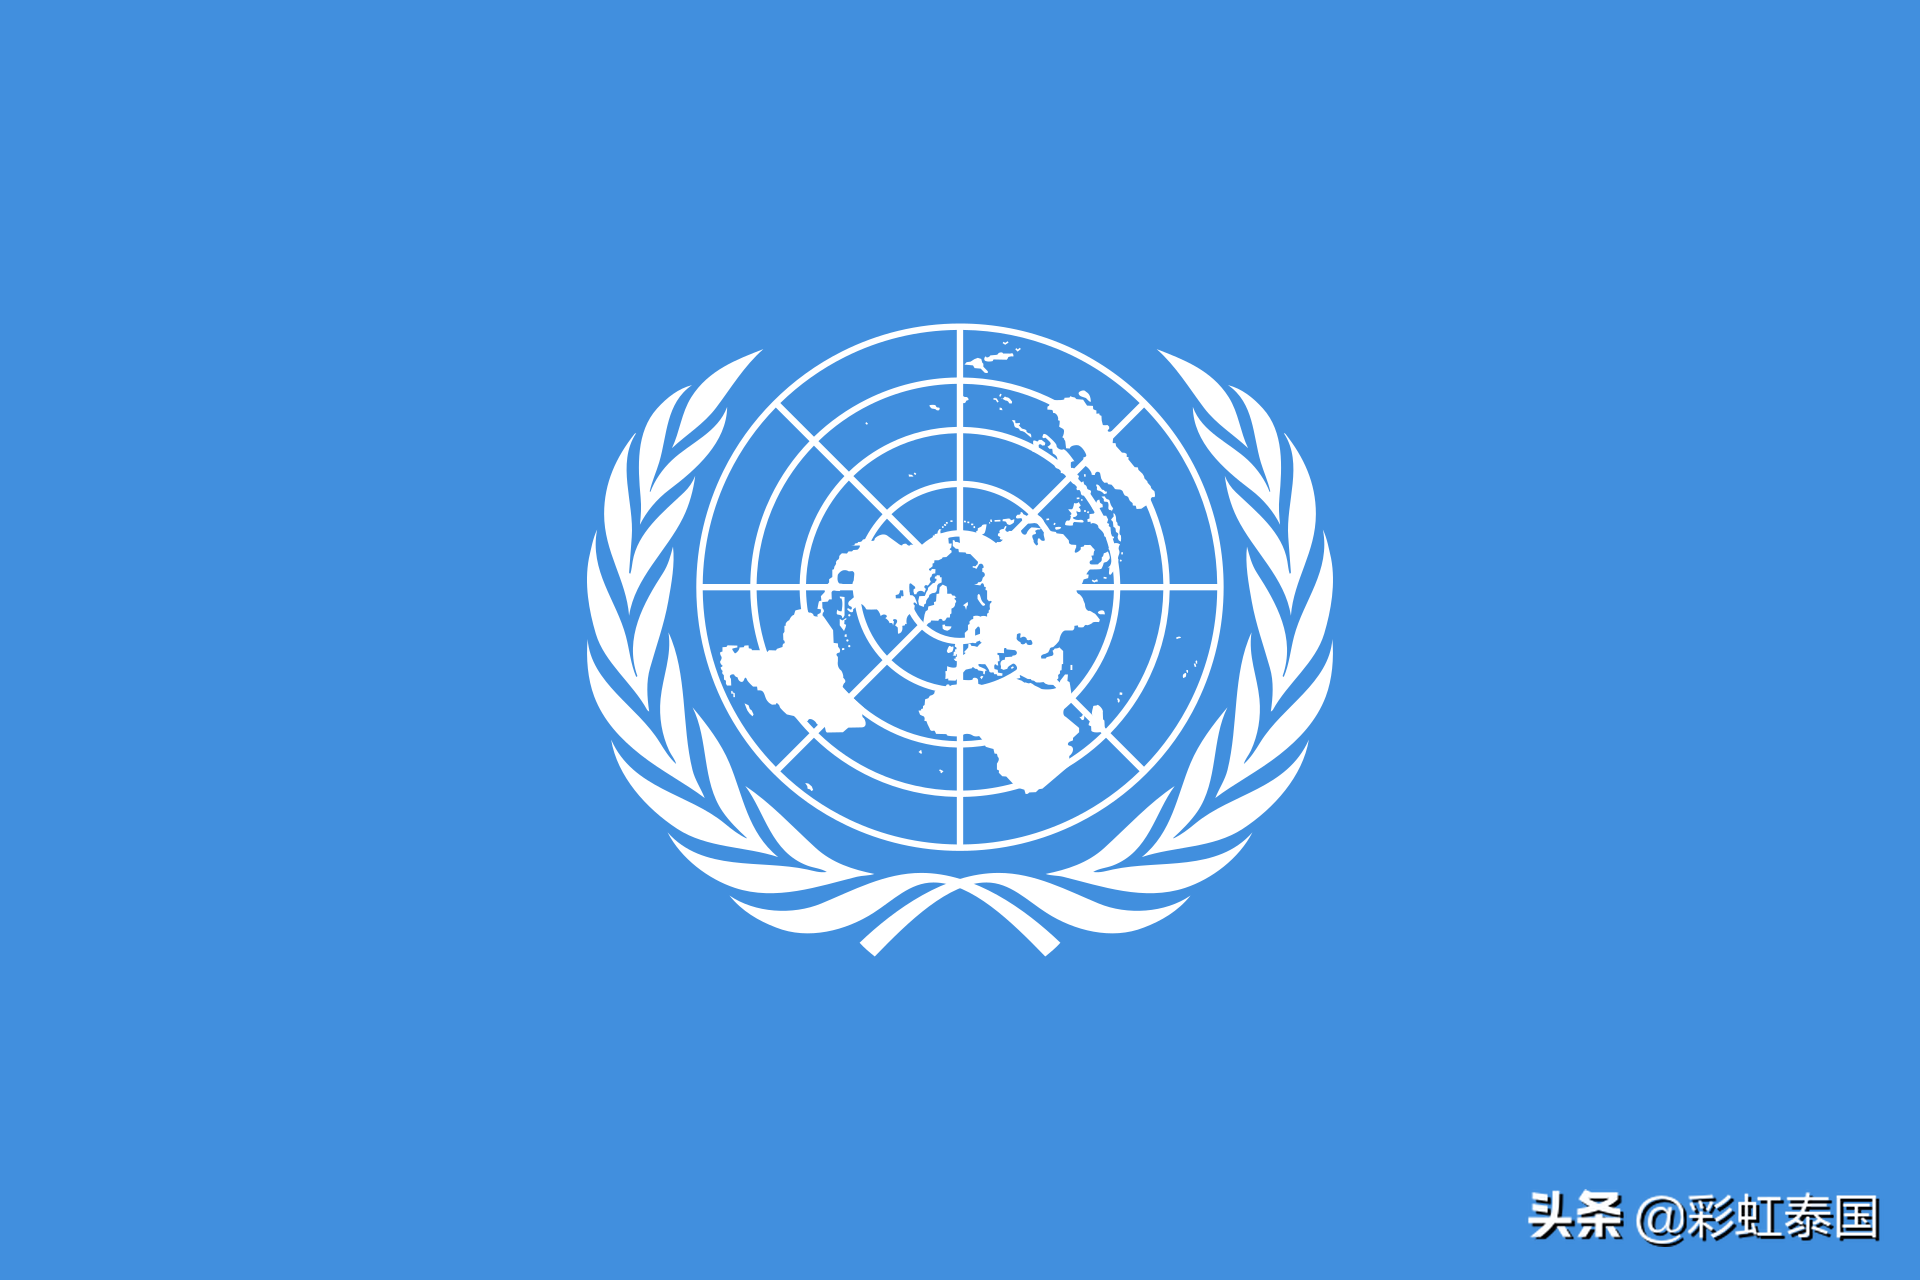 国徽图片大全(联合国及十七个专业组织标志大全) 